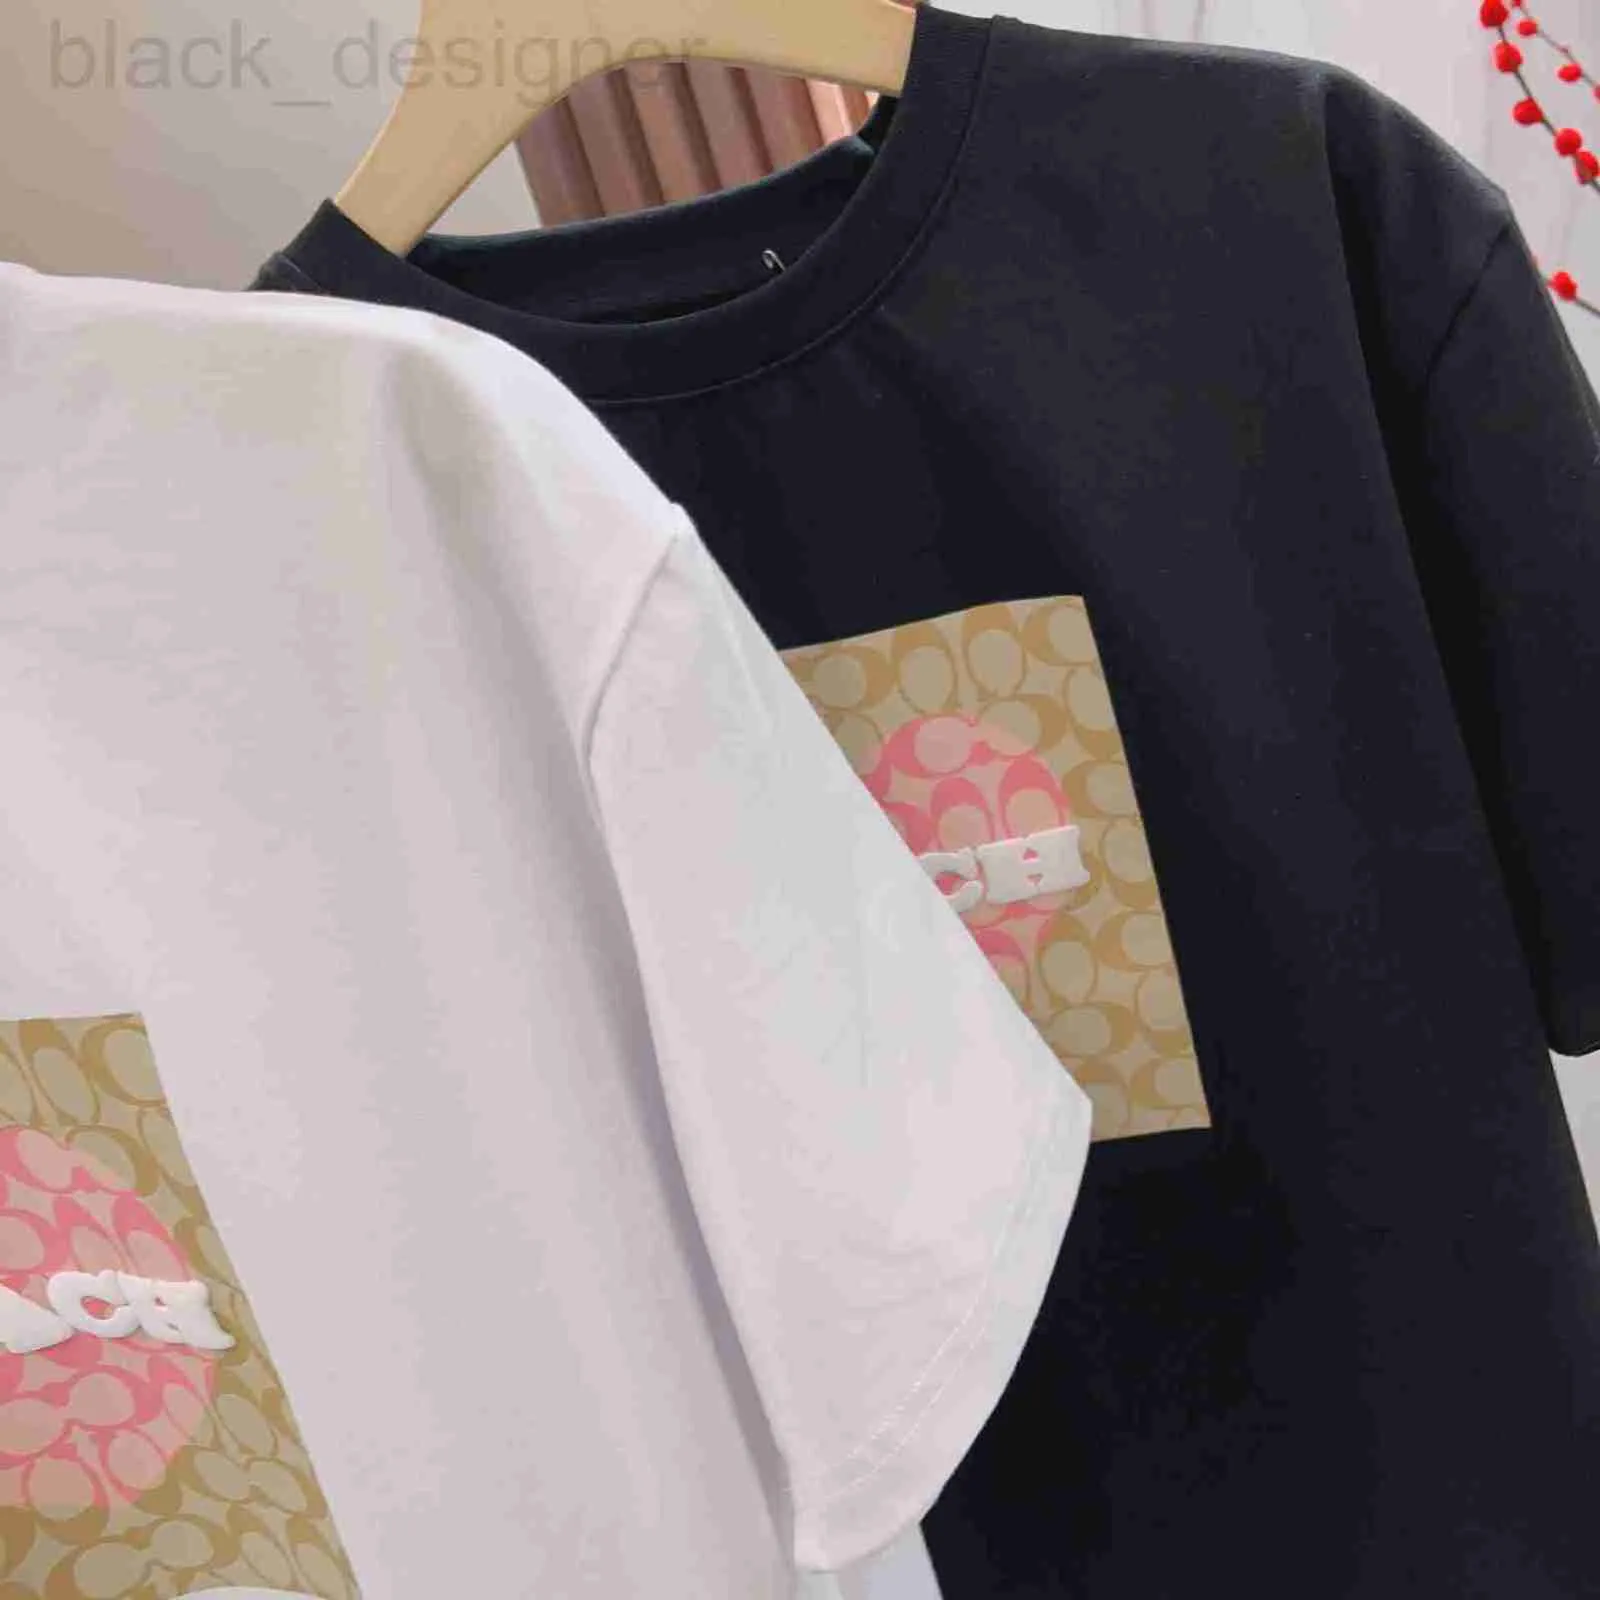 Męskie koszulki Projektant 24 wiosny/lato Ch Kou Family Classic Old Flower Full Print Love Fash Mash Mash Mash i para damskiej koszulki z krótkim rękawem T3GF